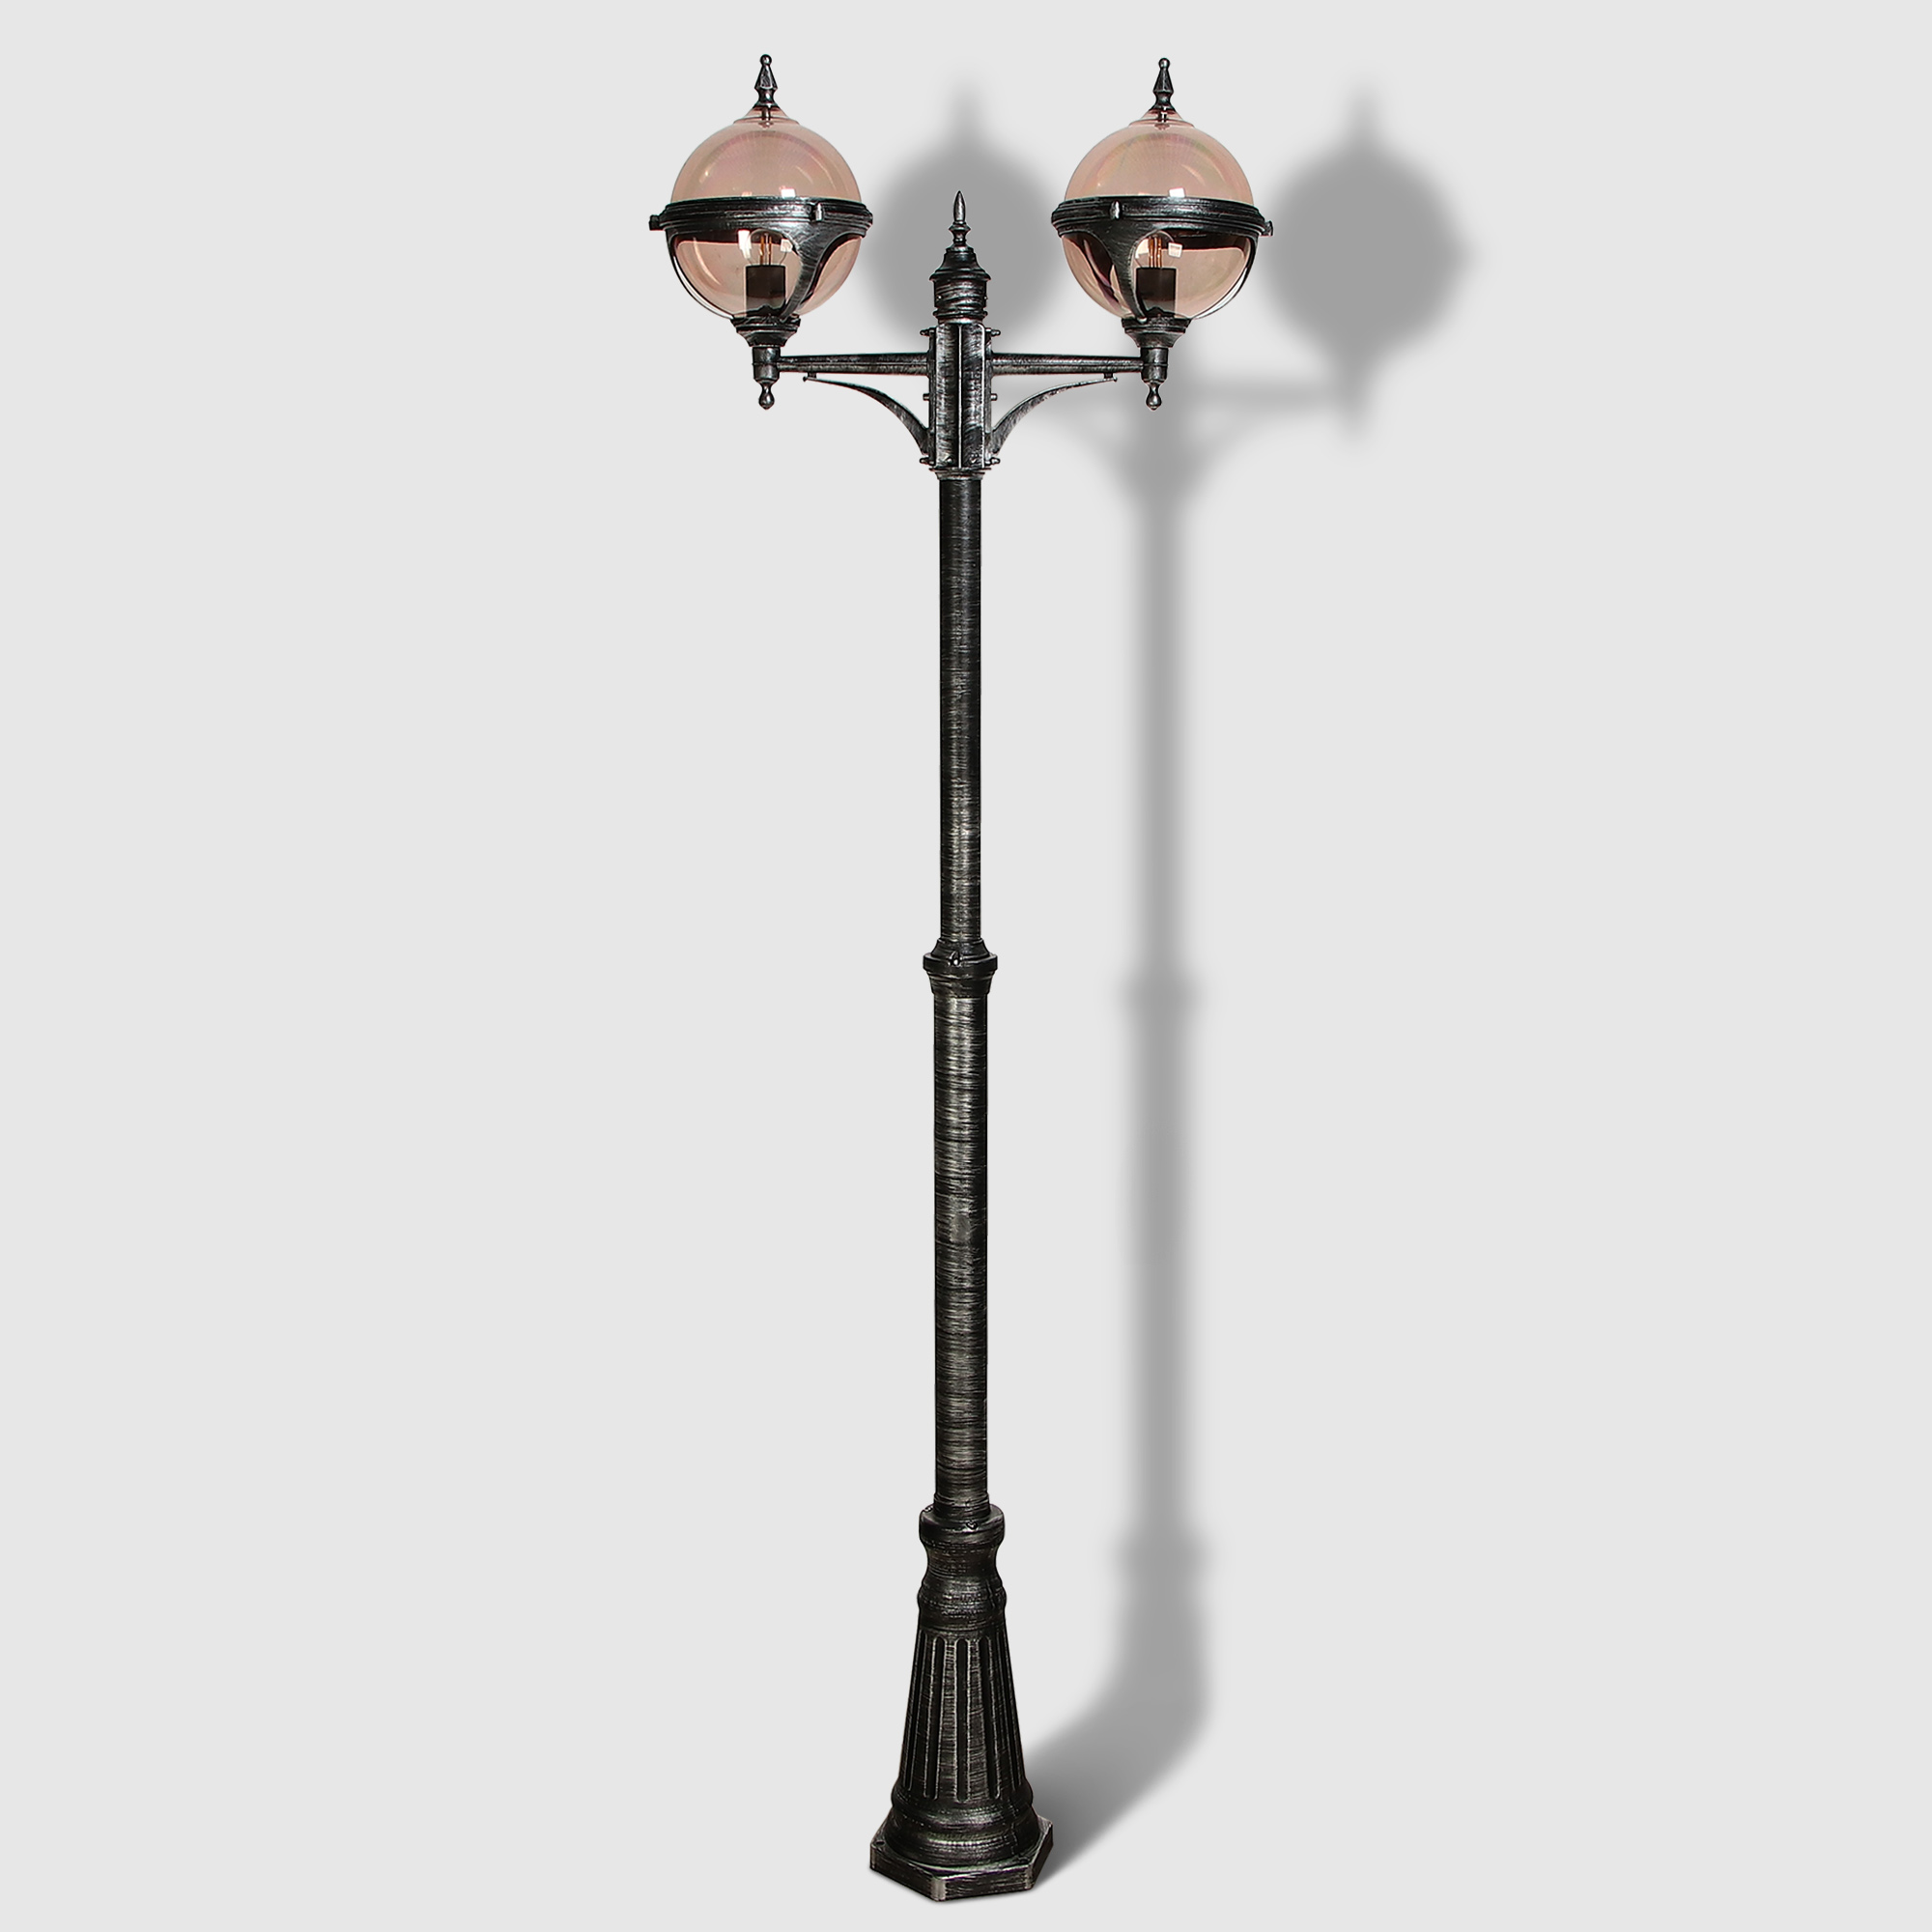 Светильник садовый Amber Lamp 9122B напольный IP44 E27 100Вт, черное серебро, цвет черное серебро, прозрачный - фото 1